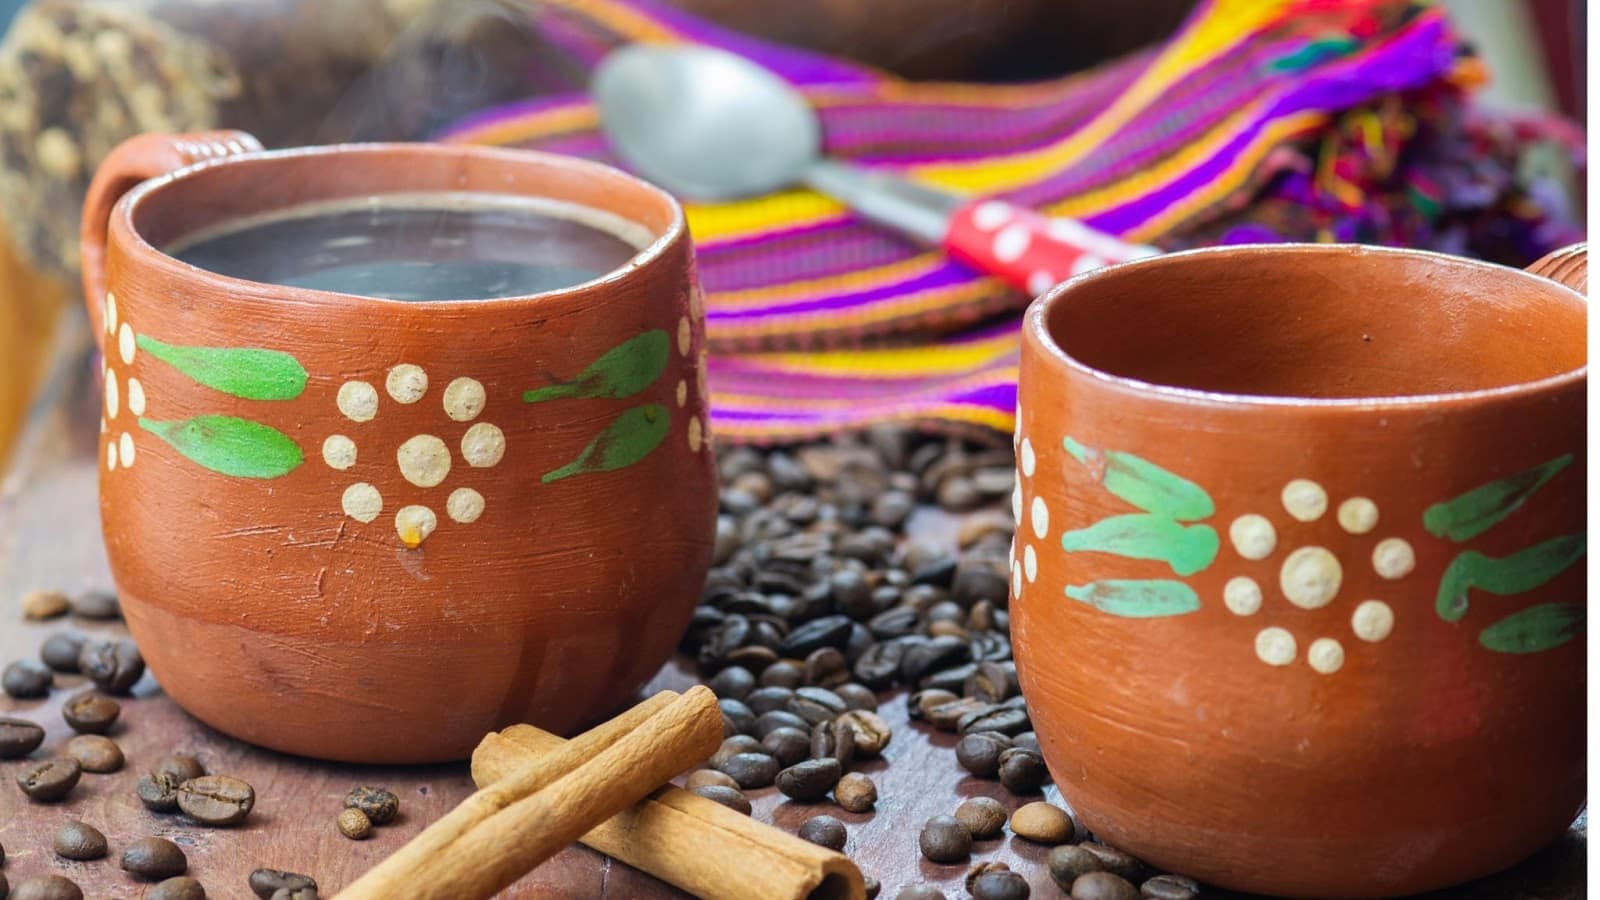 Unique clay pot Café de Olla from Mexico